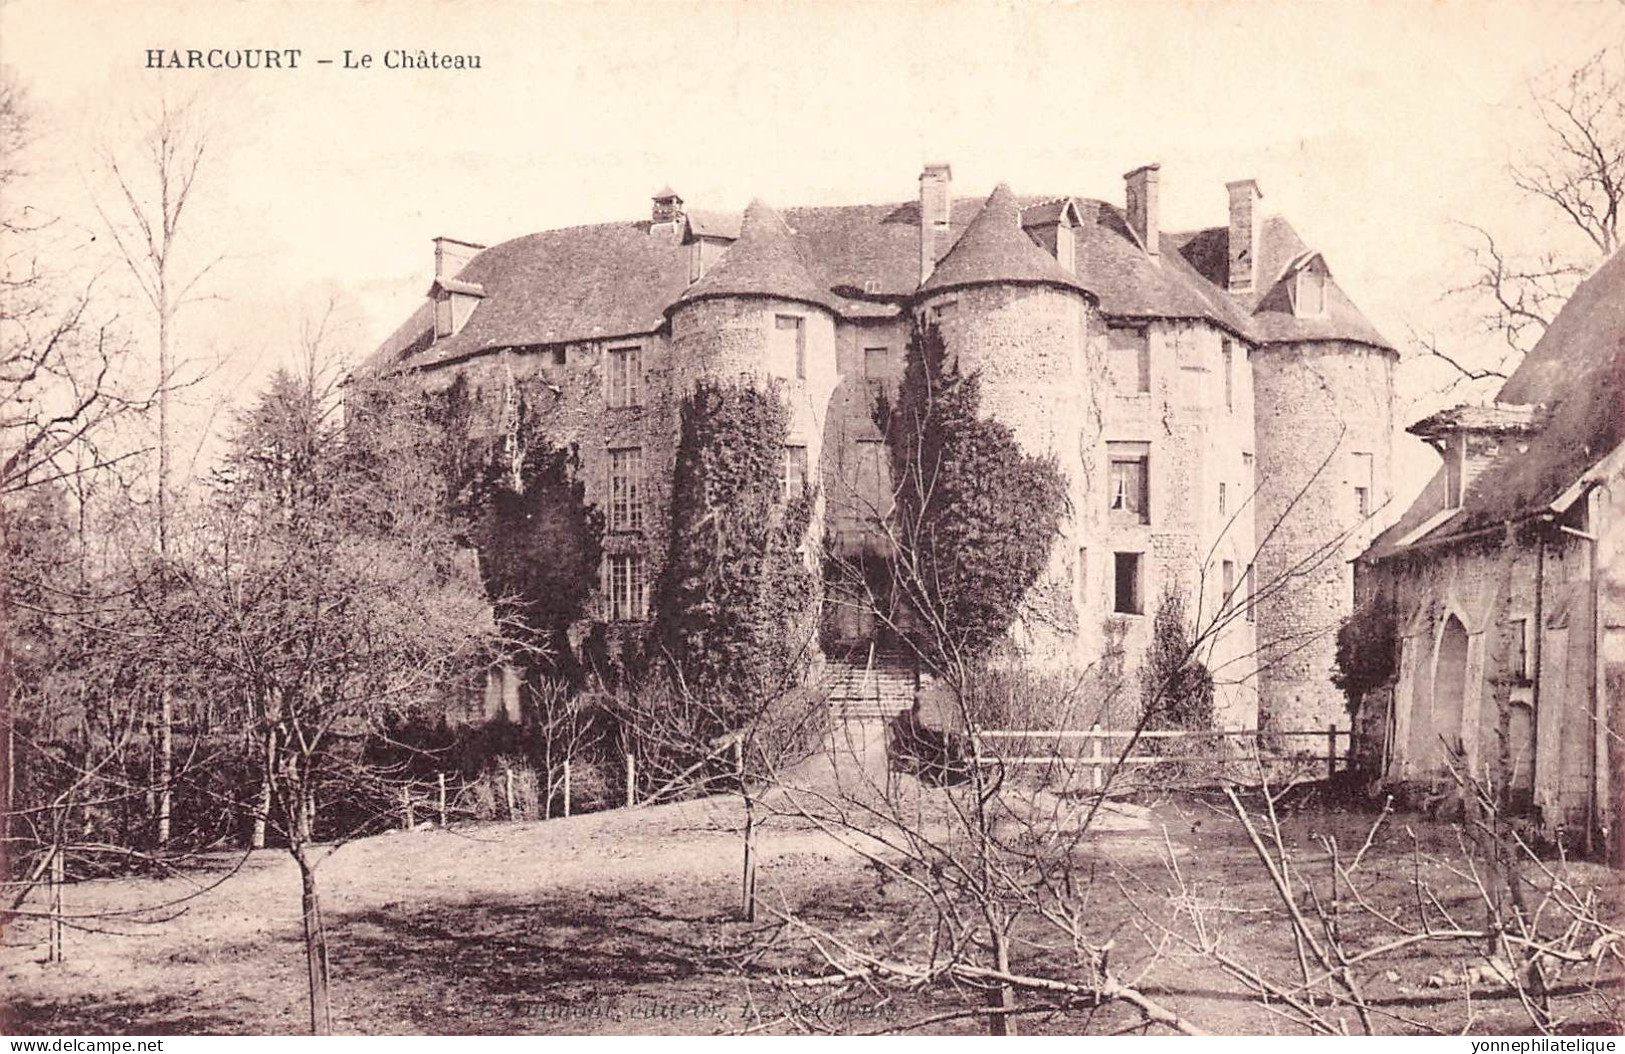 27 - EURE - HARCOURT - canton de BRIONNE -  12 CPA différentes du château - LOT 27-26G